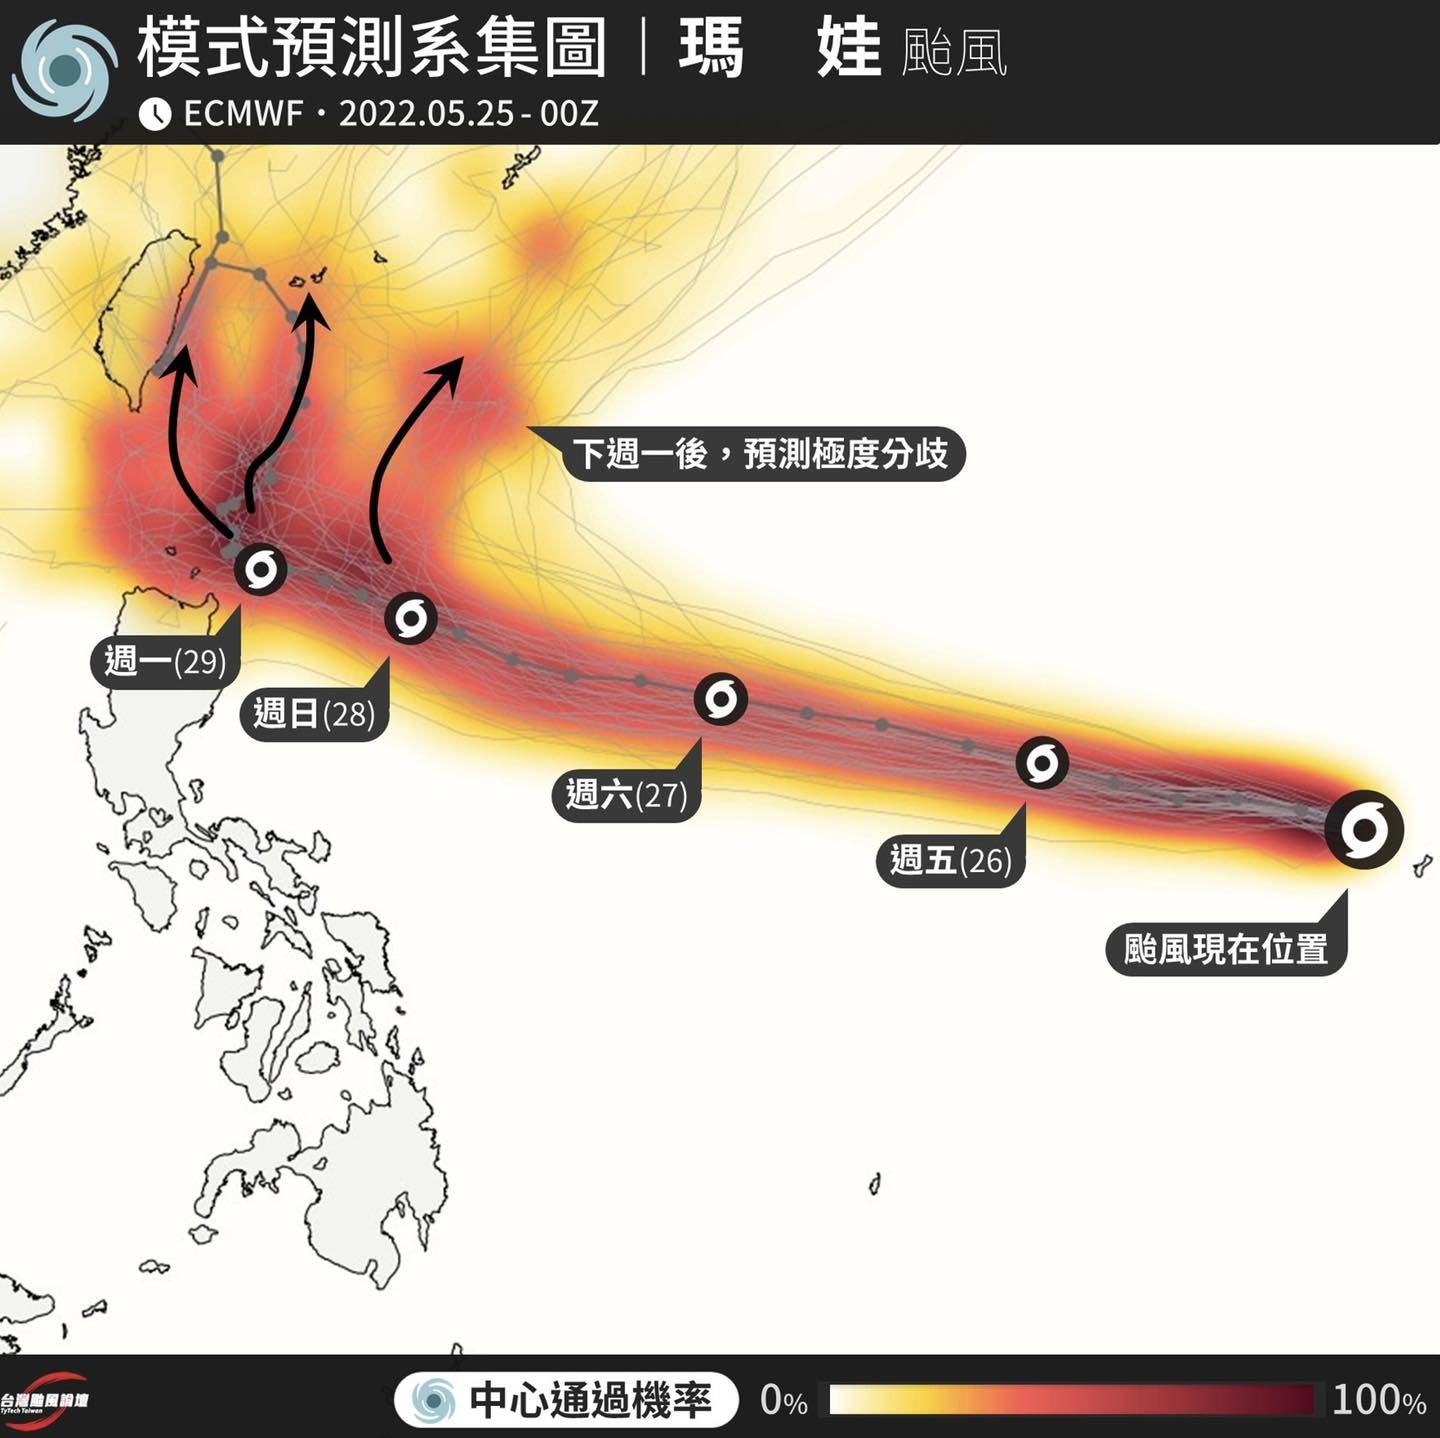 瑪娃颱風被歐洲預測路徑成「天女散花」模式。